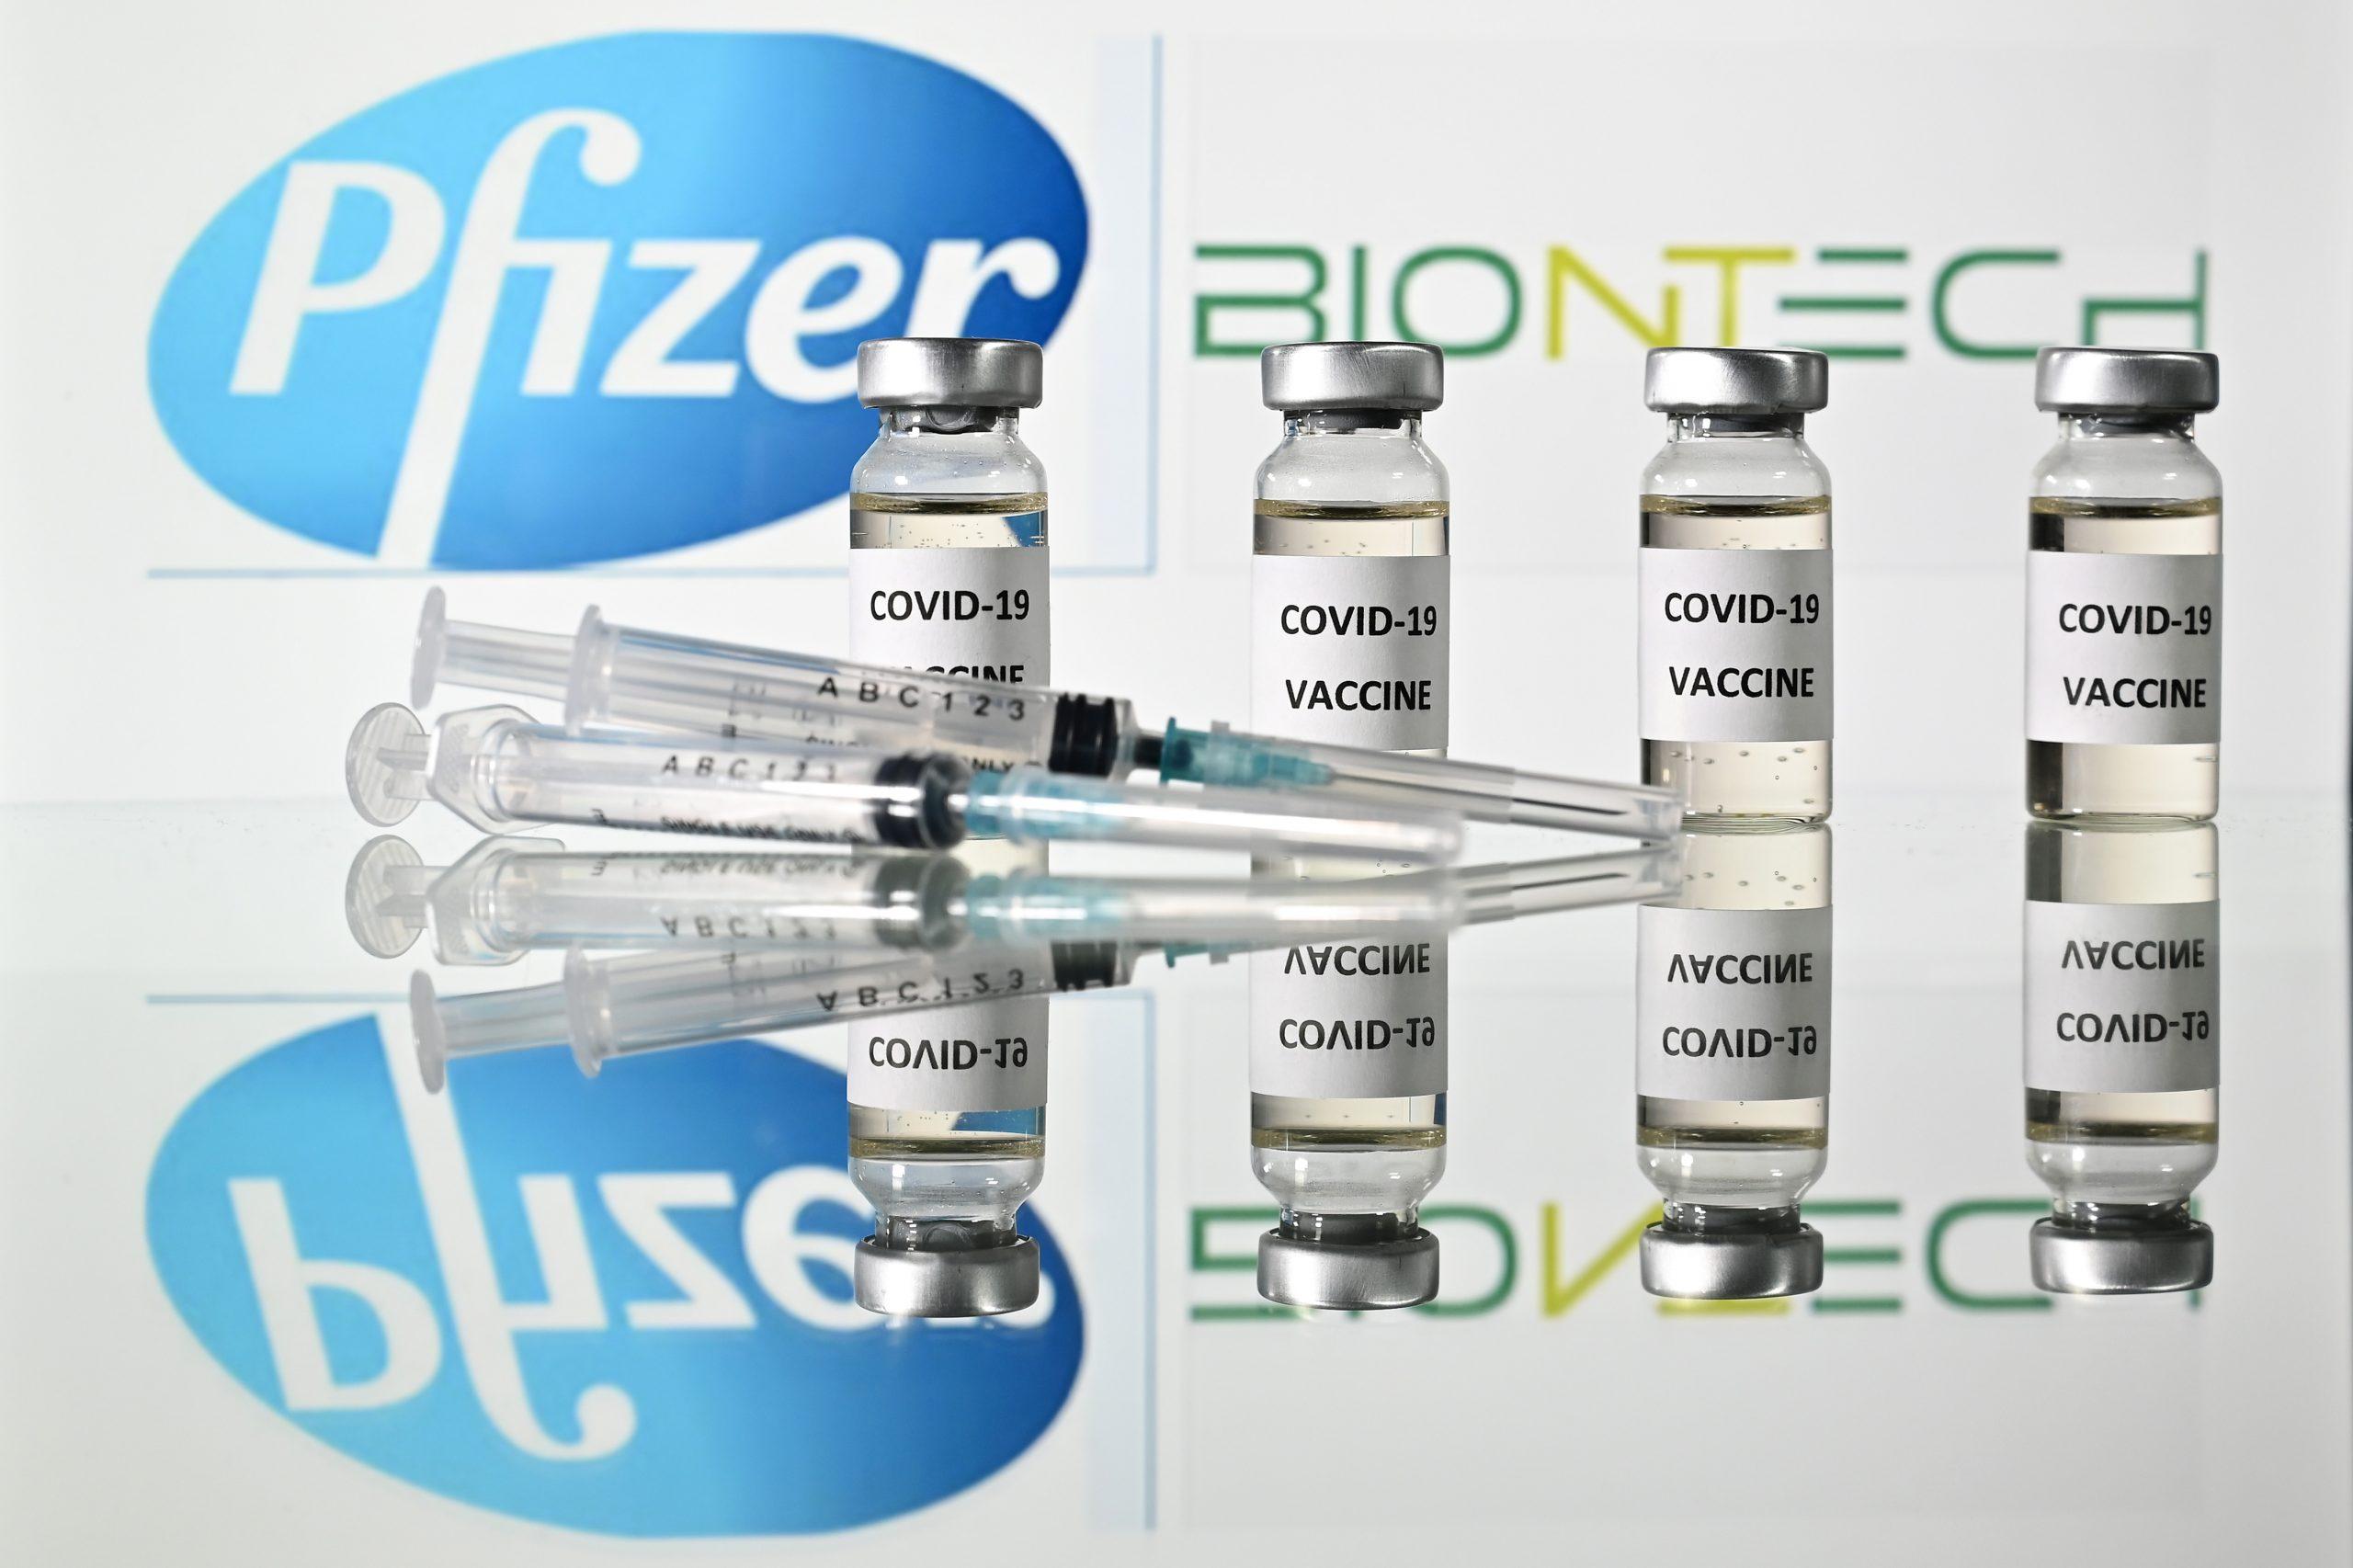 Pfizer solicitará autorización para comercializar vacuna contra COVID-19 en EU